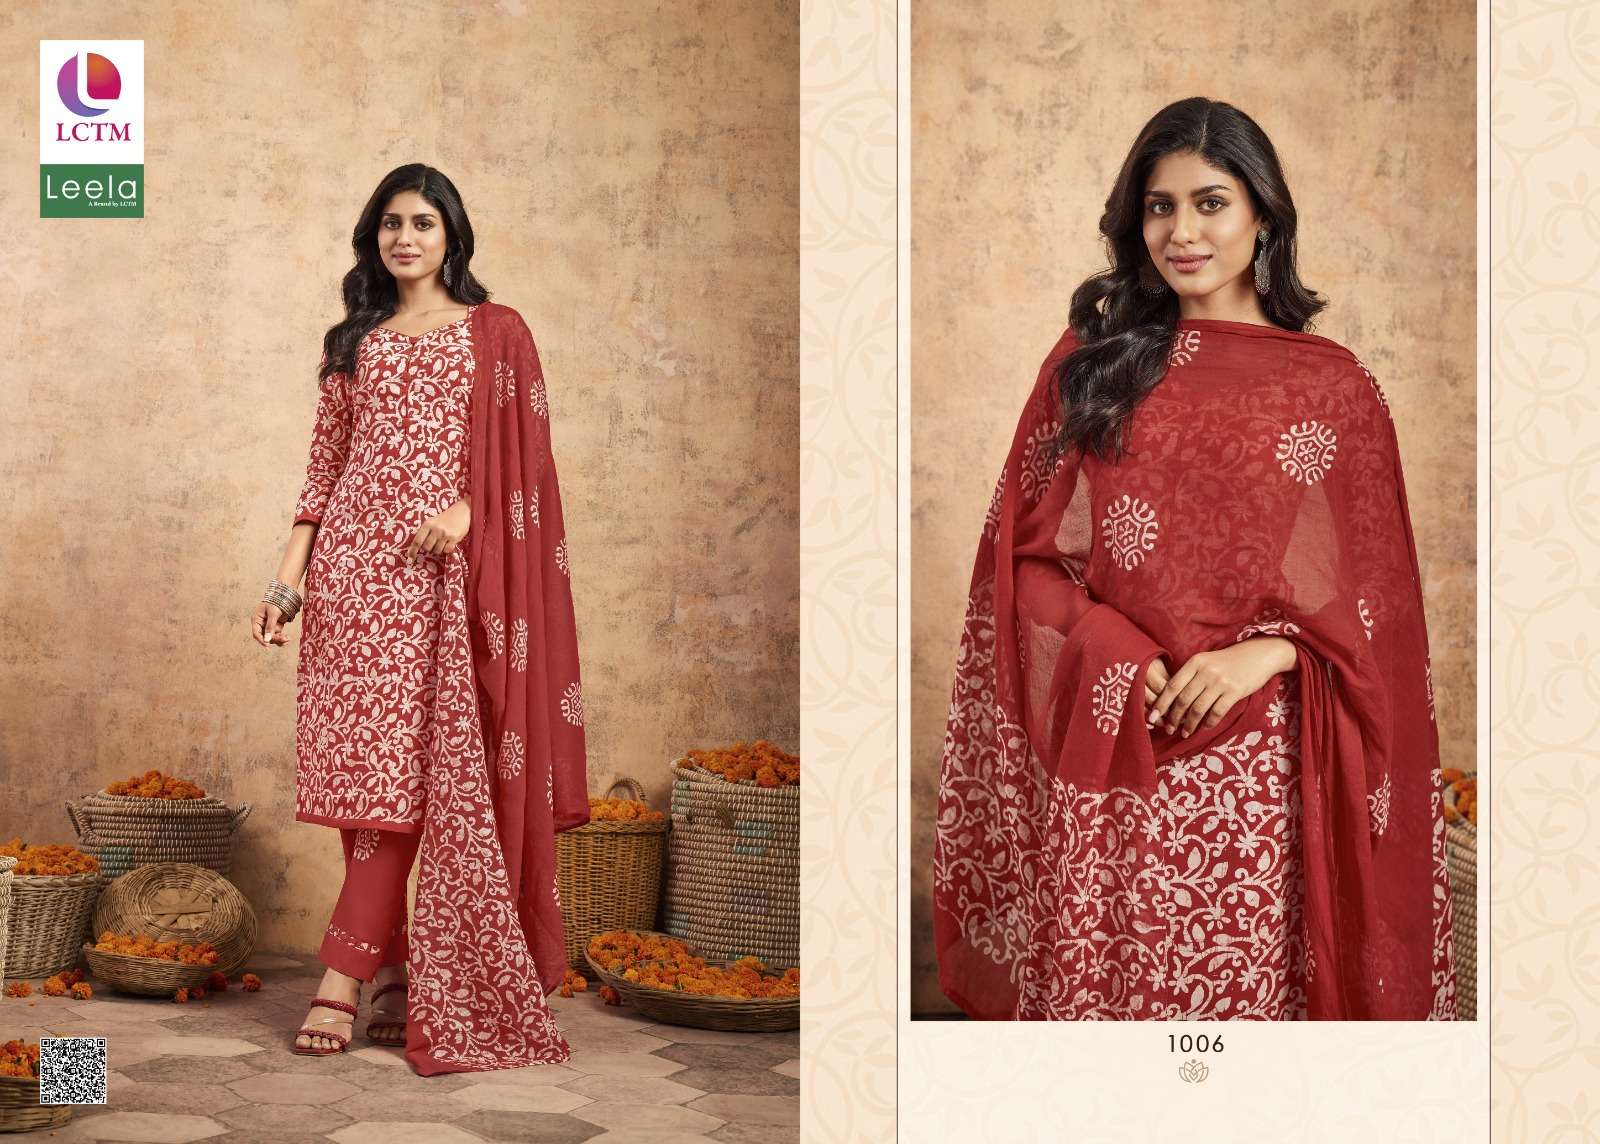 lctm overseas trisha 2 fancy regal look salwar suit catalog